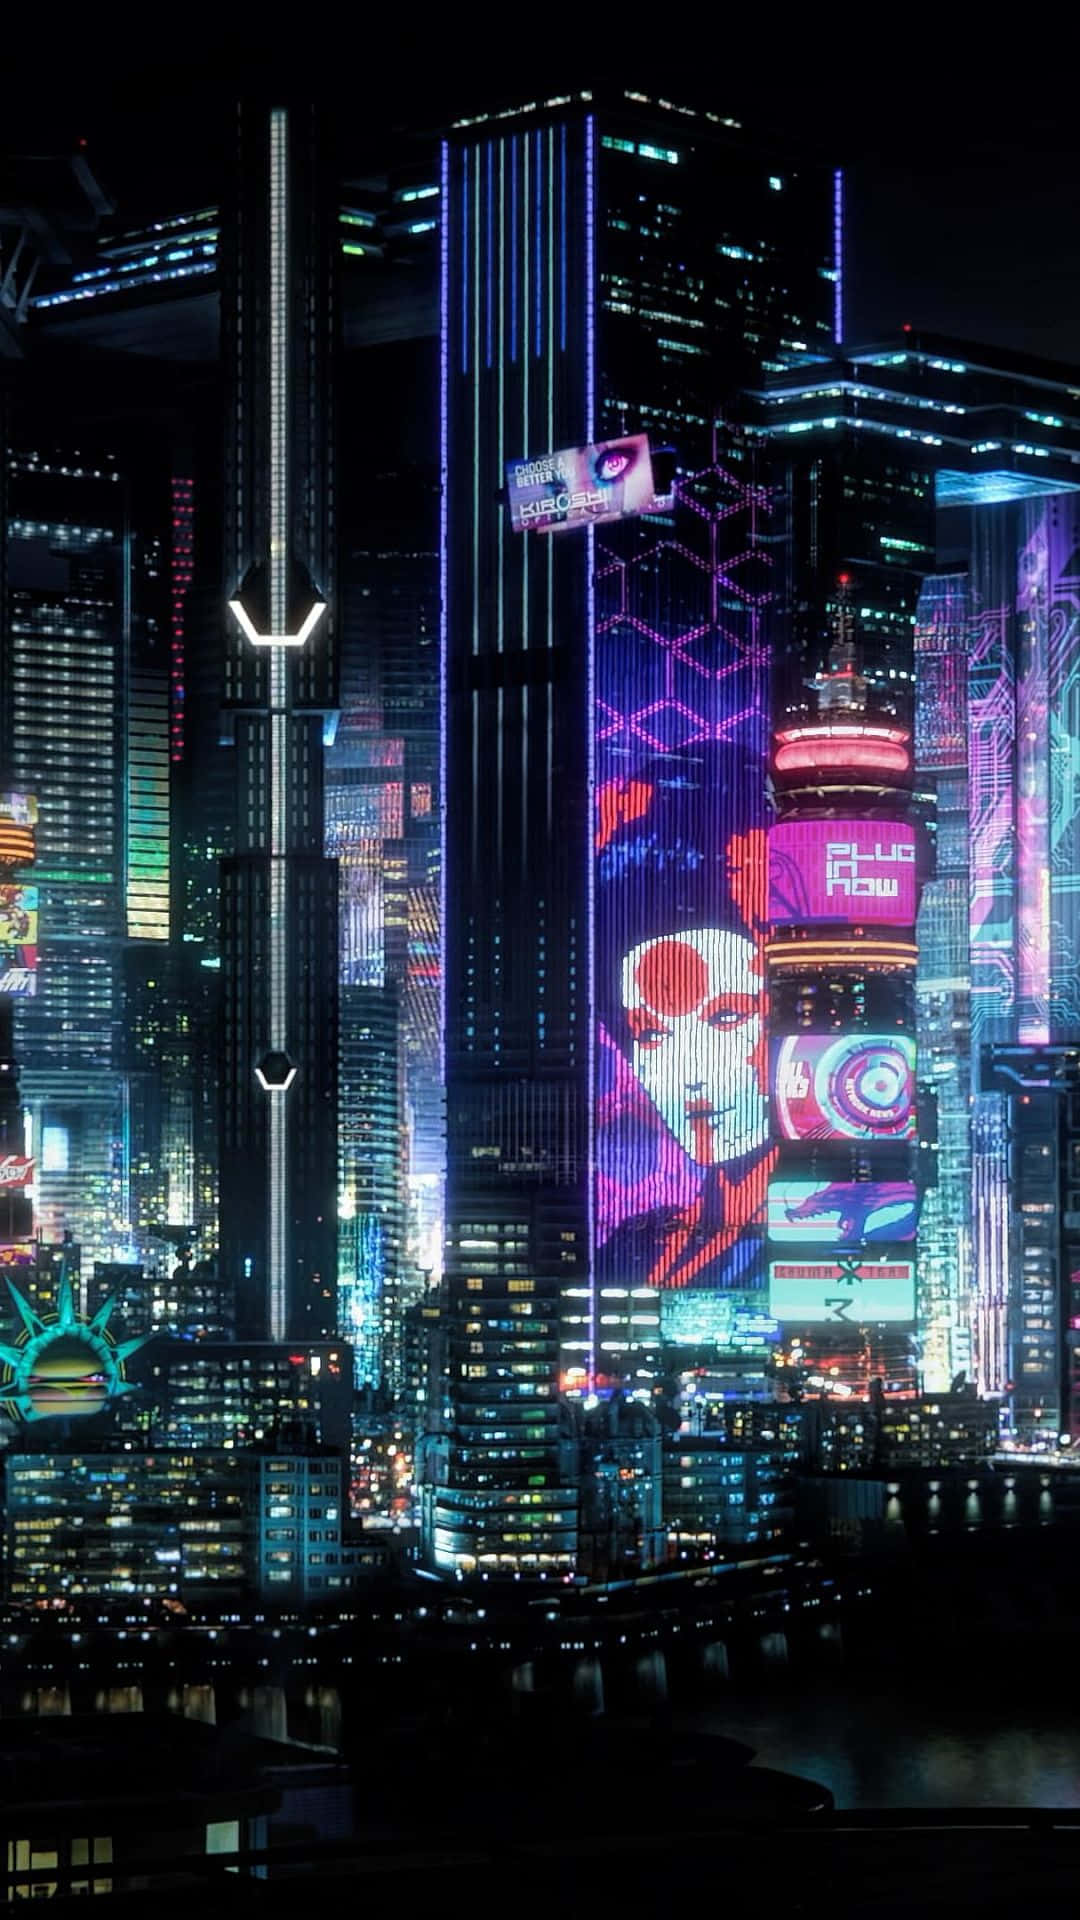 Udforsk den fremtidige by Night City i det kommende spil Cyberpunk 2077.